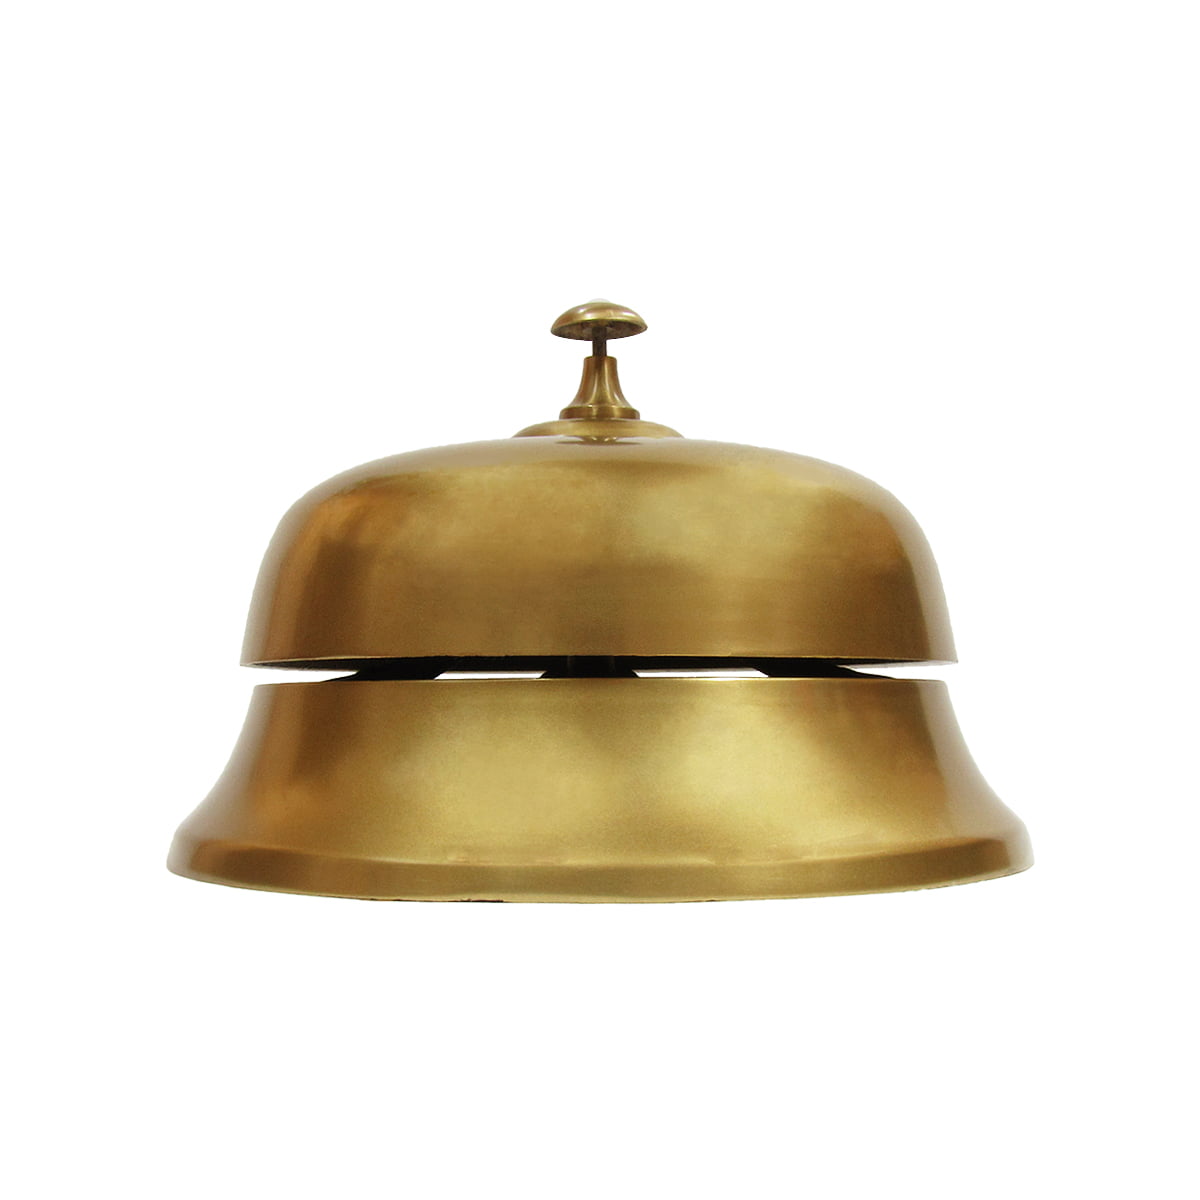 Aluminium Huge Desk Bell Antique Brass Service Call Bell Counter Reception 9" 